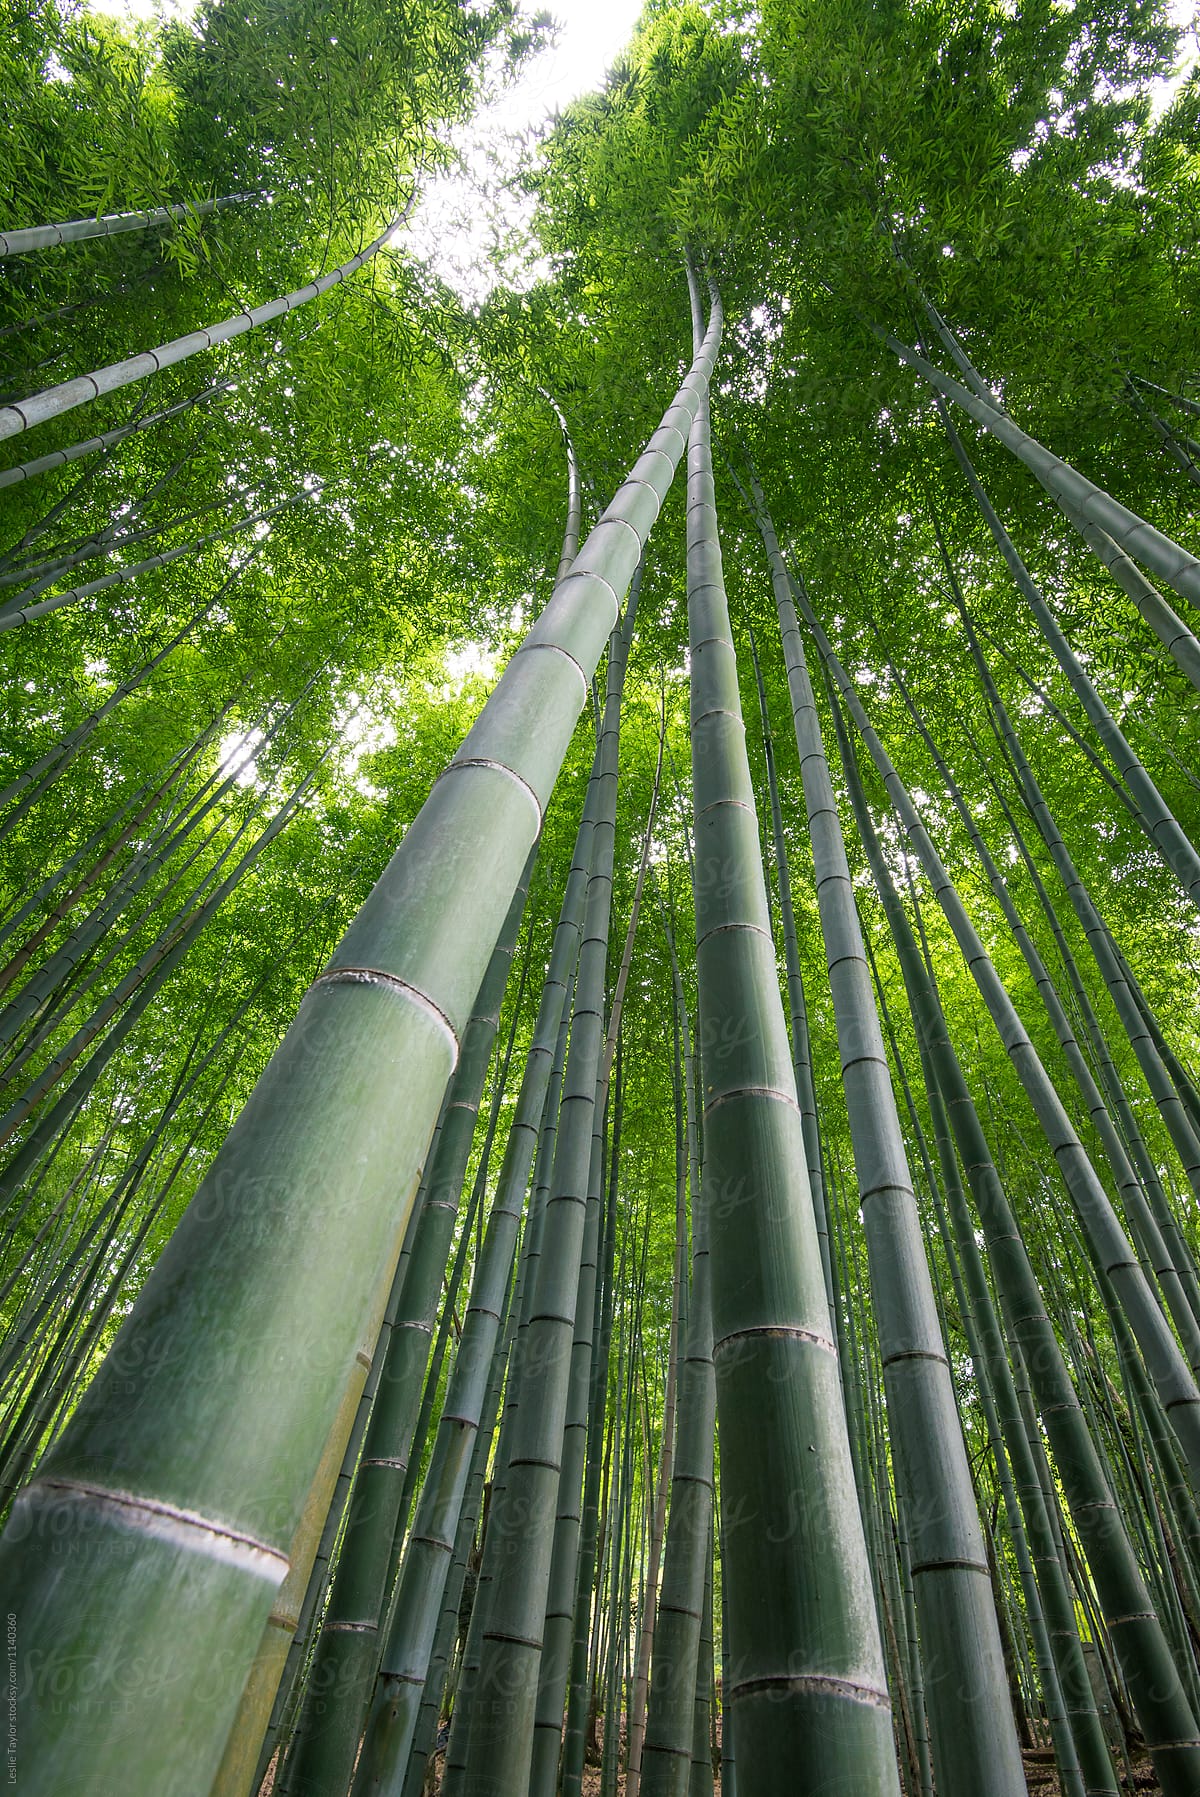 Towering Bamboo Shoots